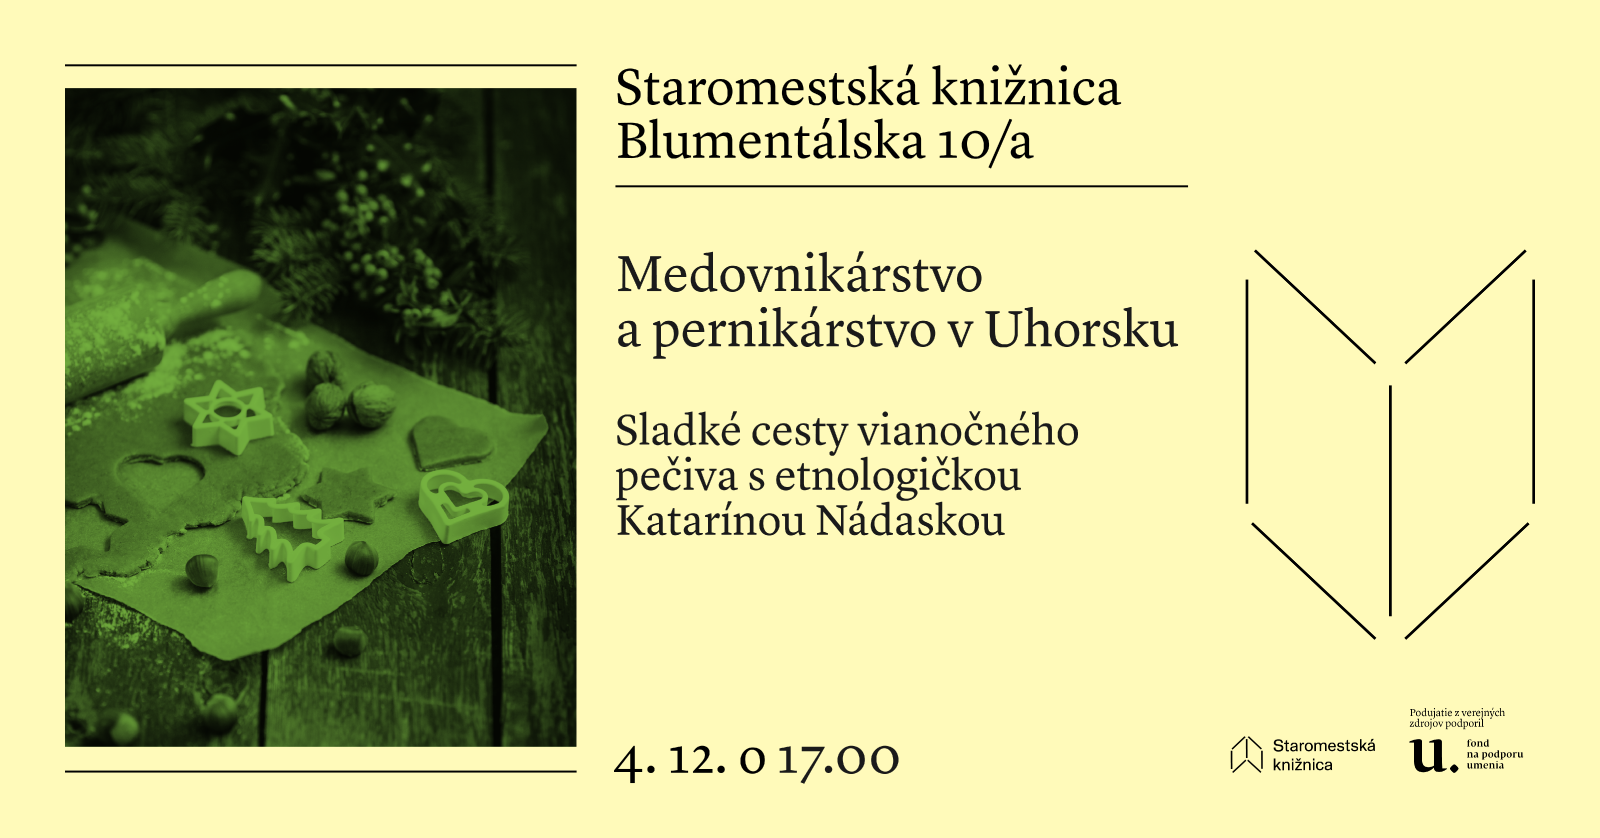 Medovnikárstvo a pernikárstvo v Uhorsku s Katarínou Nádaskou 4. decembra o 17.00 v Staromestskej knižnici na Blumentálskej 10/a